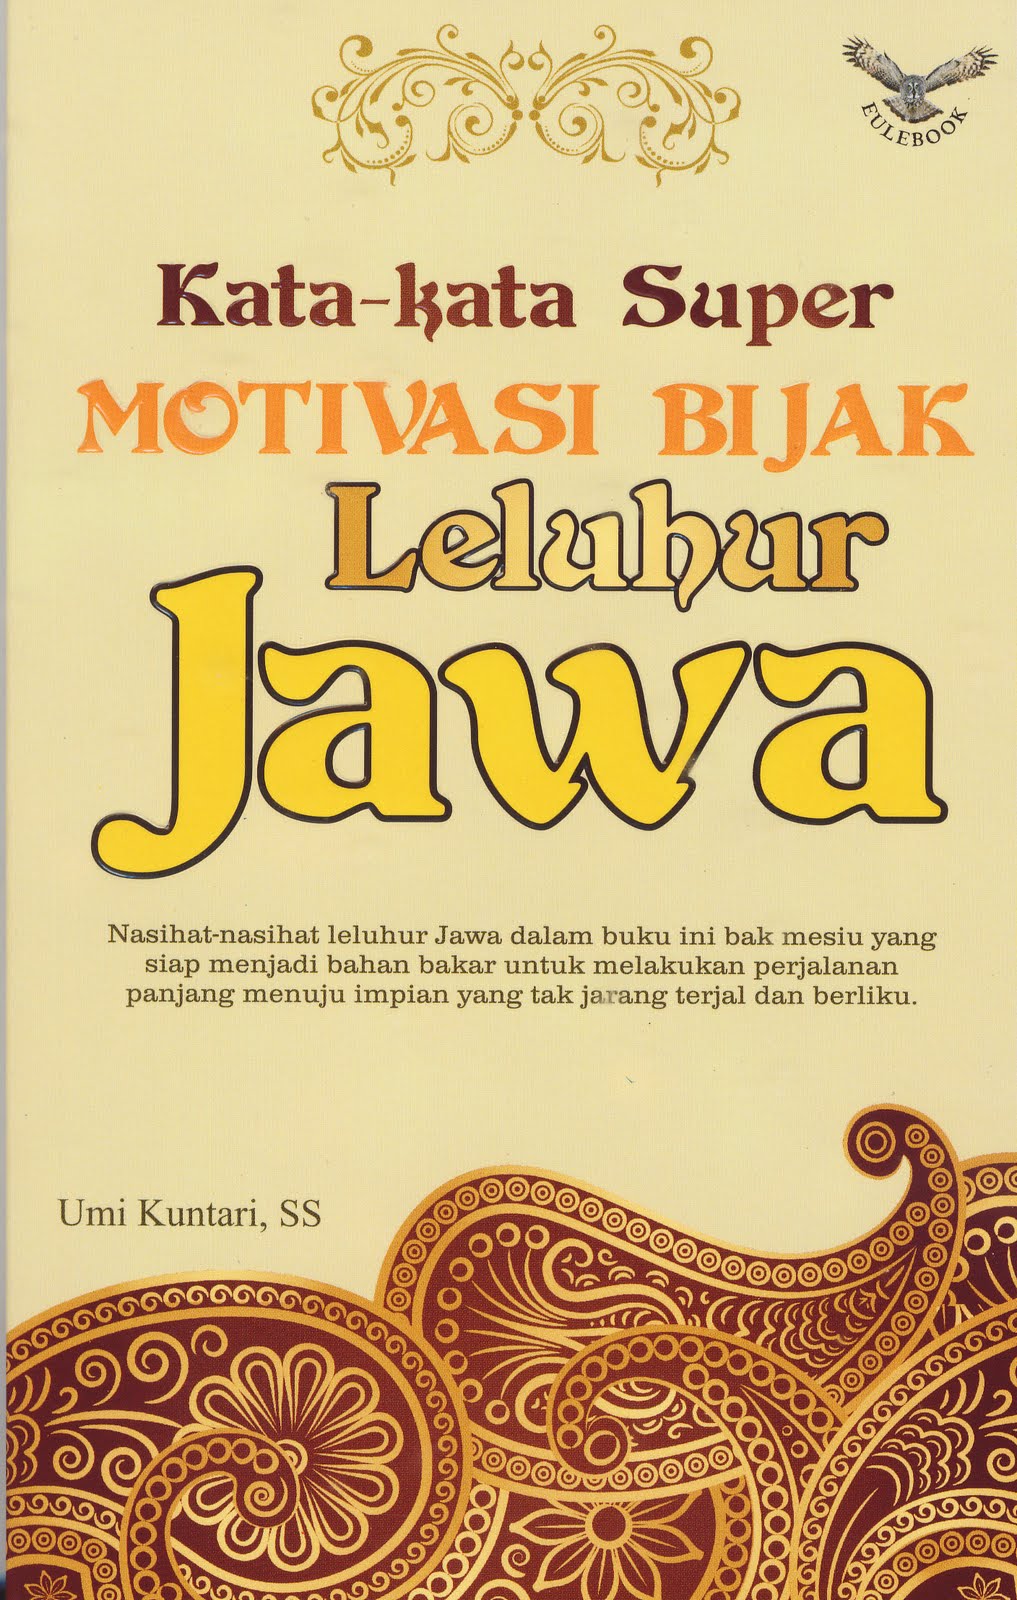 101+ Gambar Motivasi Jawa Kuno Gratis Terbaik